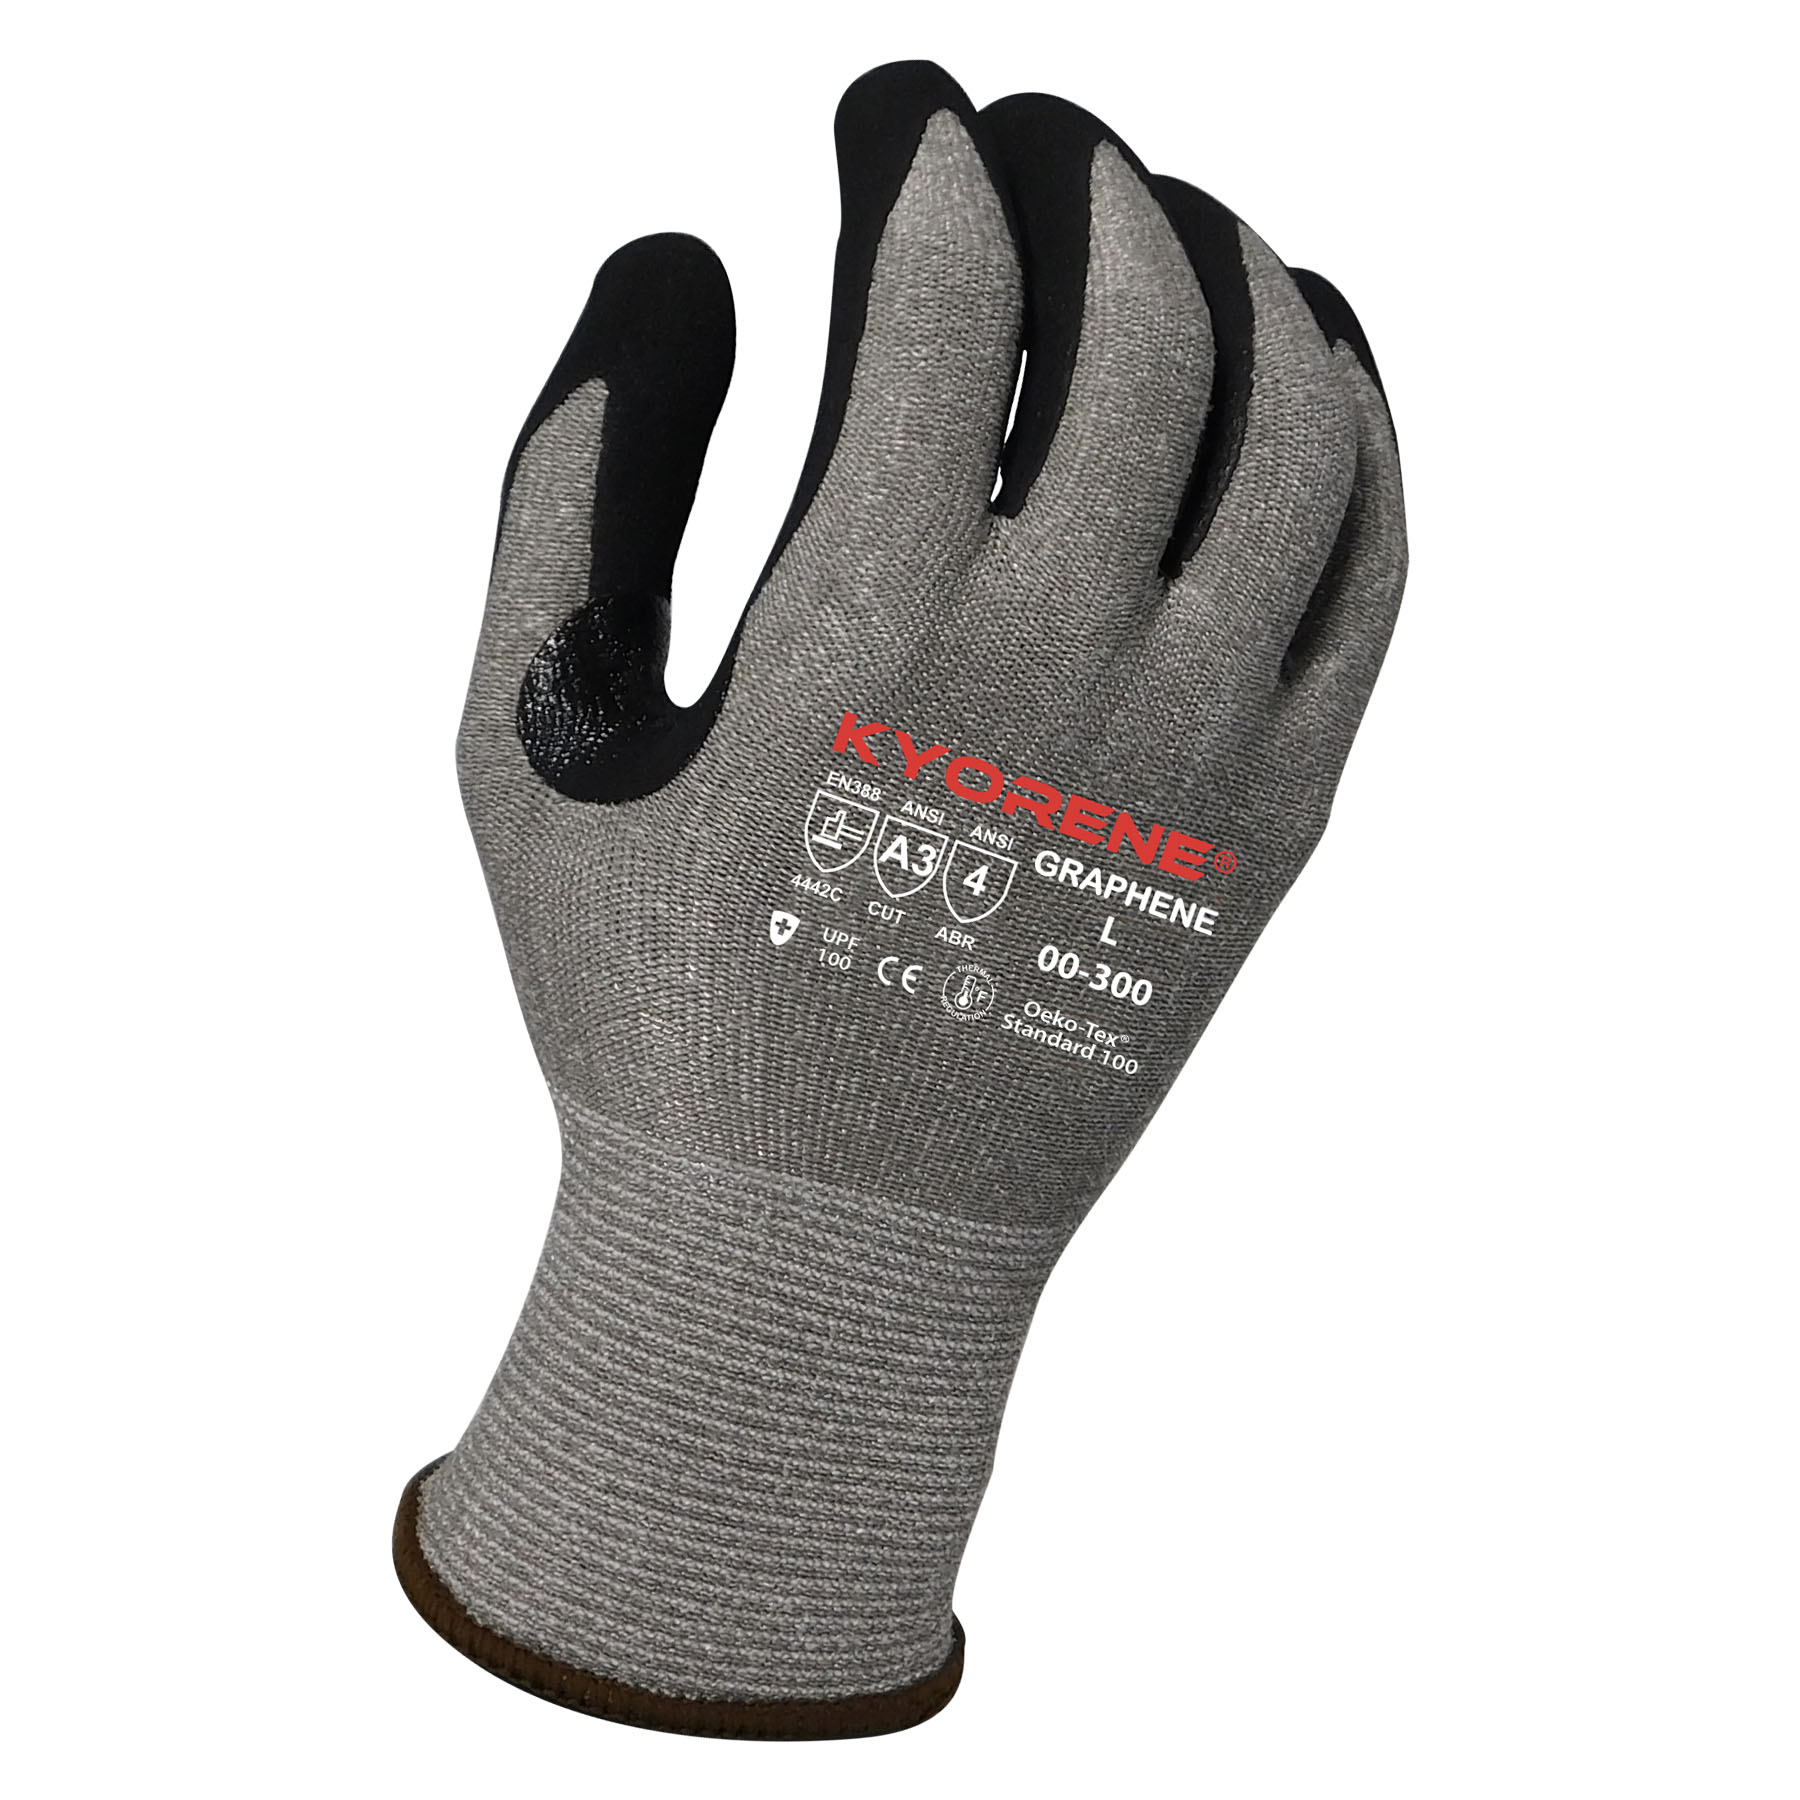 Armor Guys 00-300 Kyorene Cut Resistant Nitrile Gloves, A3